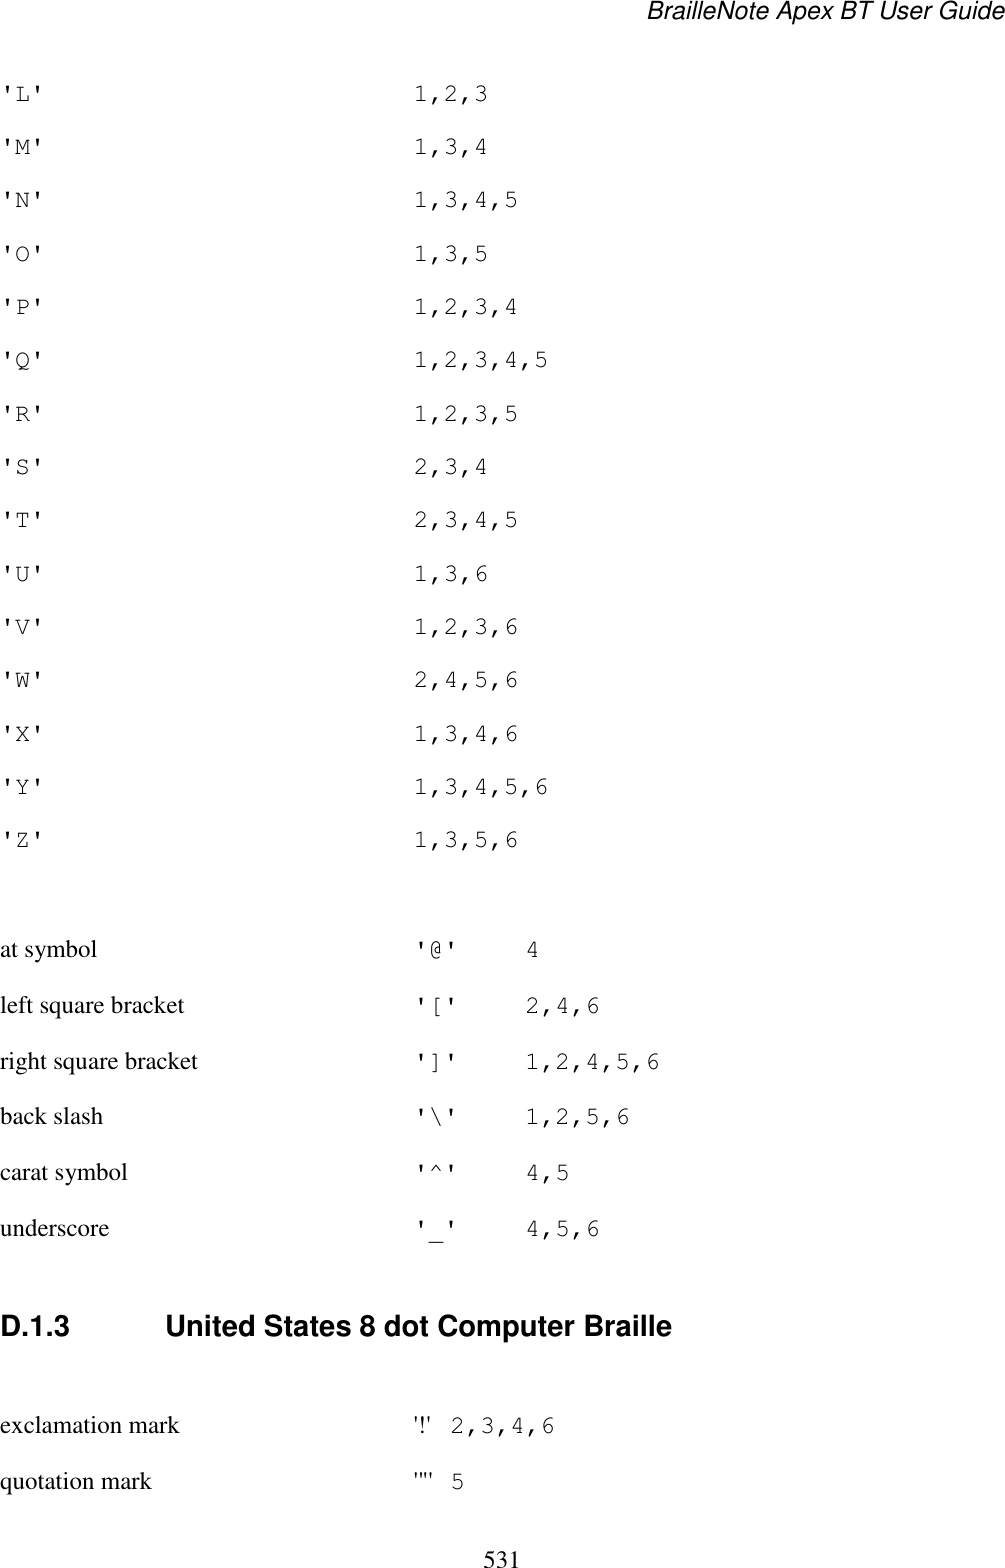 BrailleNote Apex BT User Guide   531  &apos;L&apos;  1,2,3 &apos;M&apos;  1,3,4 &apos;N&apos;  1,3,4,5 &apos;O&apos;  1,3,5 &apos;P&apos;  1,2,3,4 &apos;Q&apos;  1,2,3,4,5 &apos;R&apos;  1,2,3,5 &apos;S&apos;  2,3,4 &apos;T&apos;  2,3,4,5 &apos;U&apos;  1,3,6 &apos;V&apos;  1,2,3,6 &apos;W&apos;  2,4,5,6 &apos;X&apos;  1,3,4,6 &apos;Y&apos;  1,3,4,5,6 &apos;Z&apos;  1,3,5,6  at symbol  &apos;@&apos;  4 left square bracket  &apos;[&apos;  2,4,6 right square bracket  &apos;]&apos;  1,2,4,5,6 back slash  &apos;\&apos;  1,2,5,6 carat symbol  &apos;^&apos;  4,5 underscore  &apos;_&apos;  4,5,6  D.1.3  United States 8 dot Computer Braille  exclamation mark  &apos;!&apos;  2,3,4,6 quotation mark  &apos;&quot;&apos;  5 